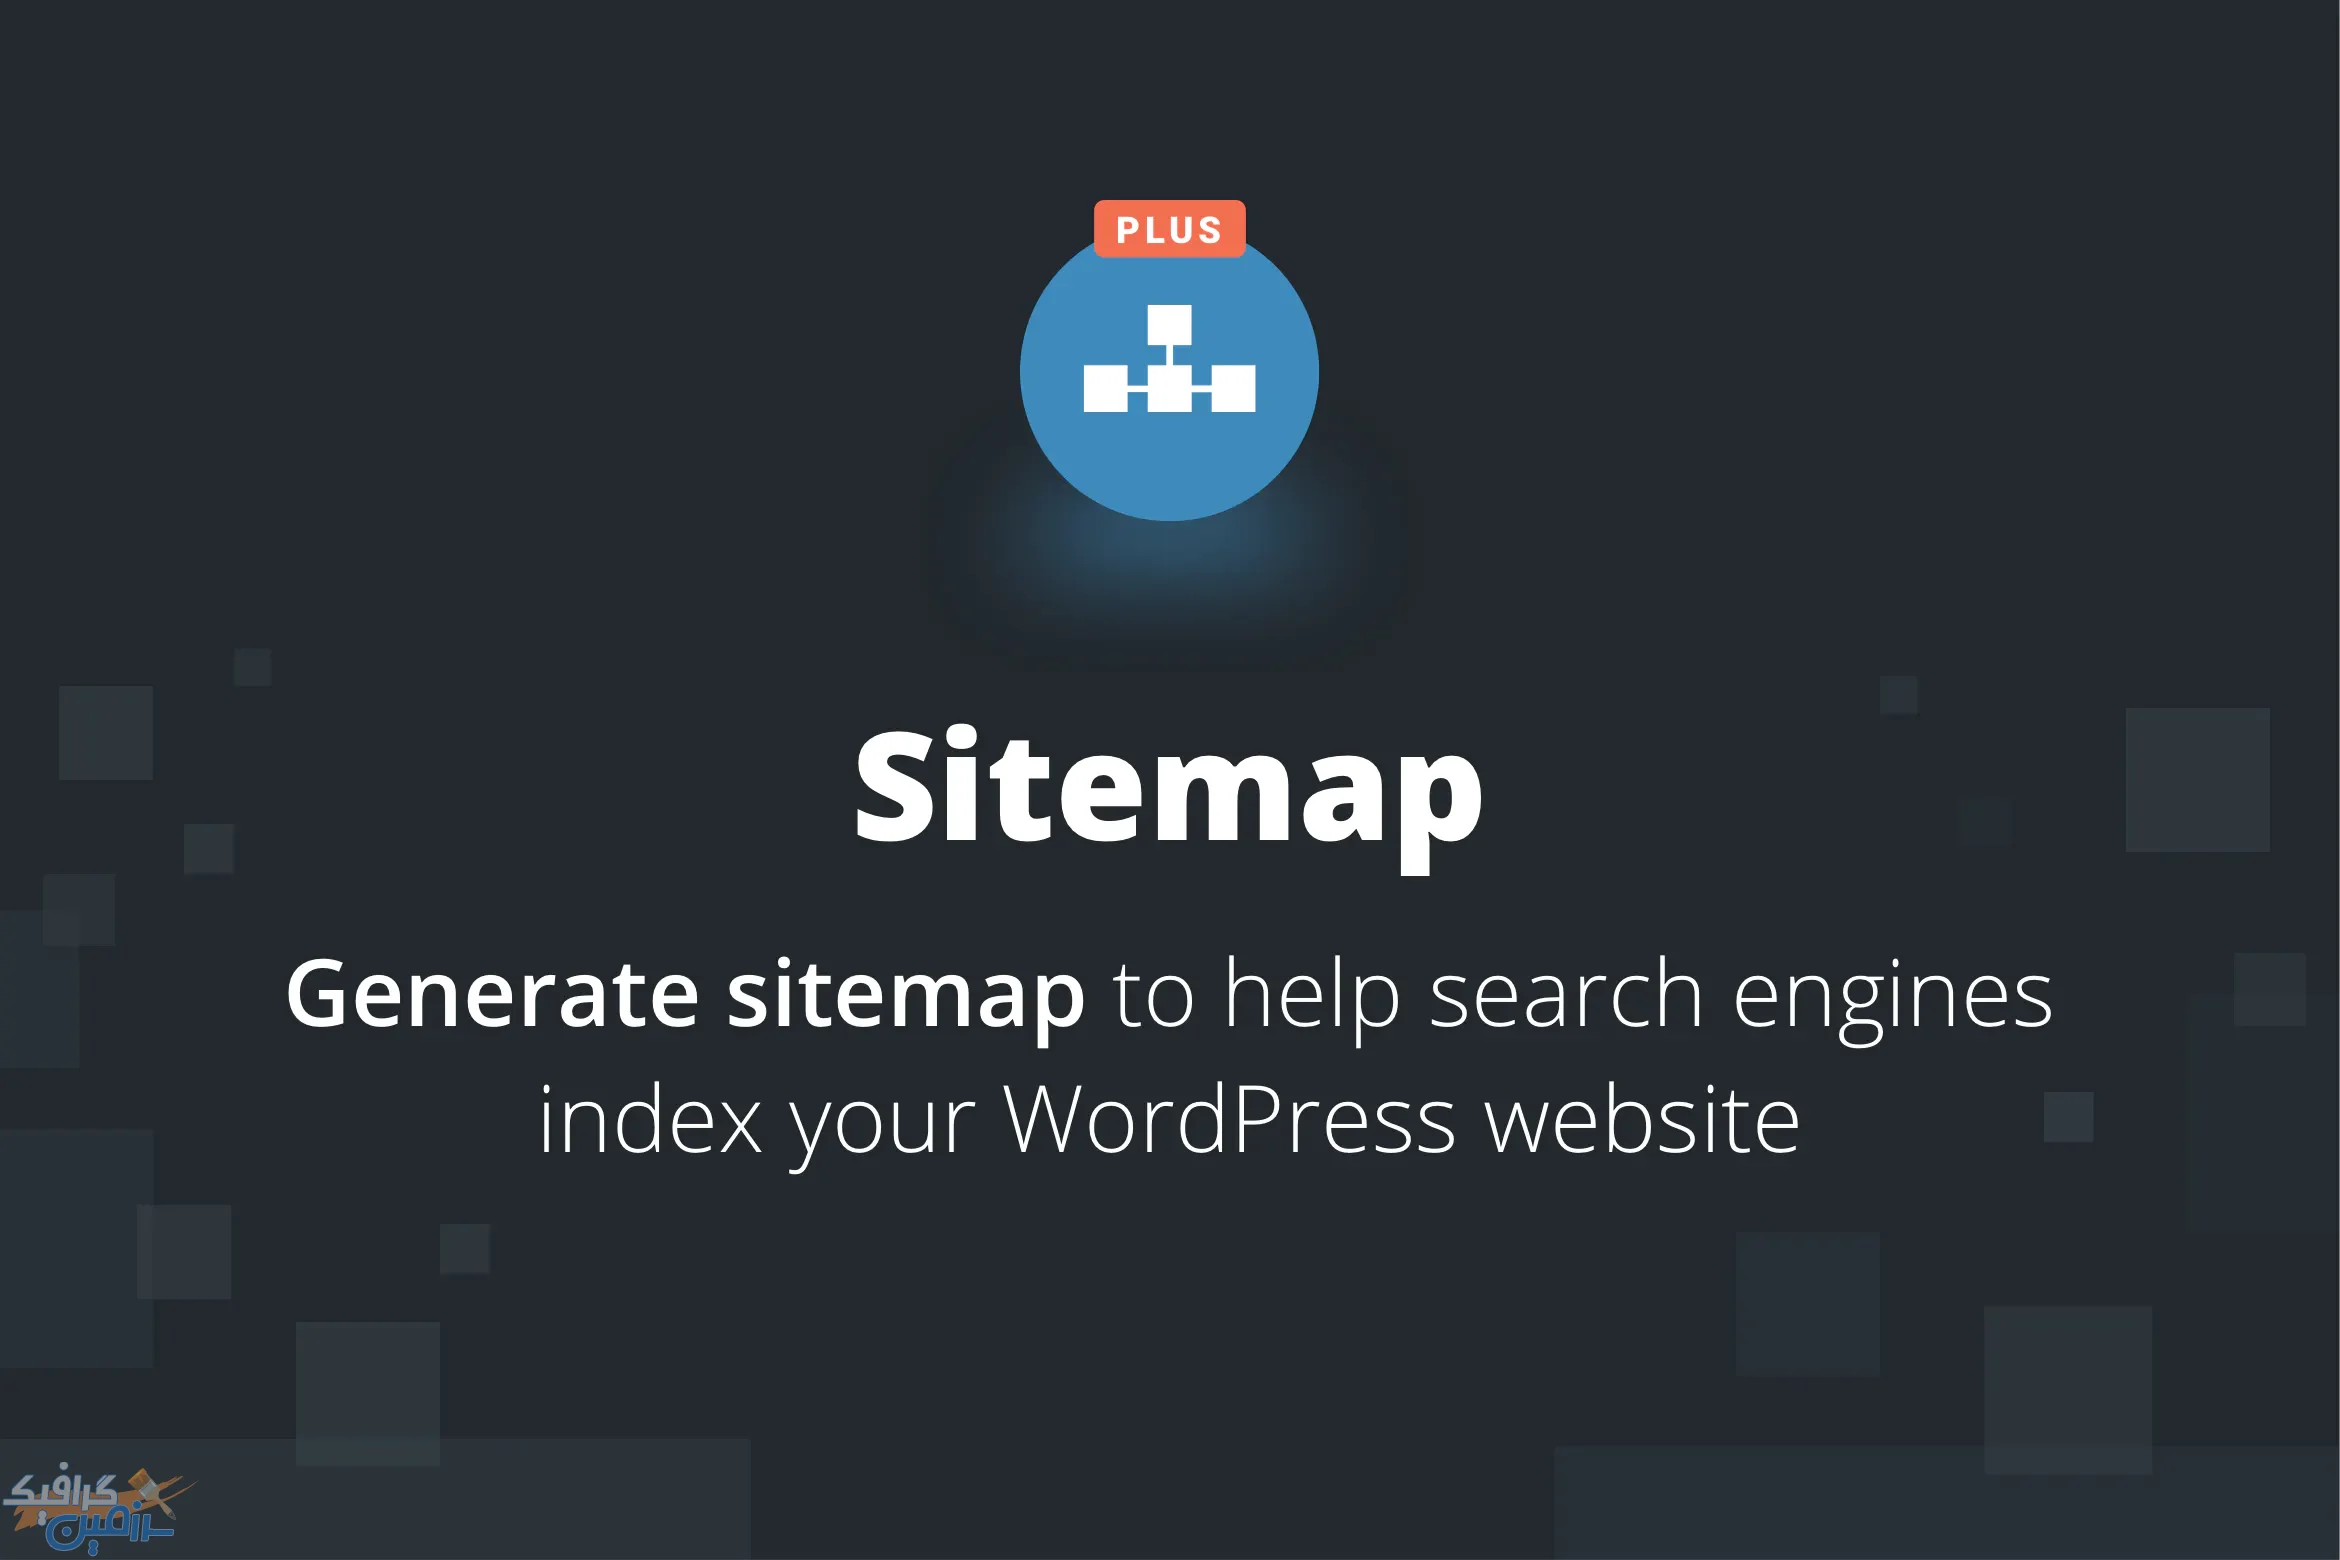 دانلود افزونه وردپرس Sitemap Plus – افزونه سایت مپ و نقشه سایت پیشرفته